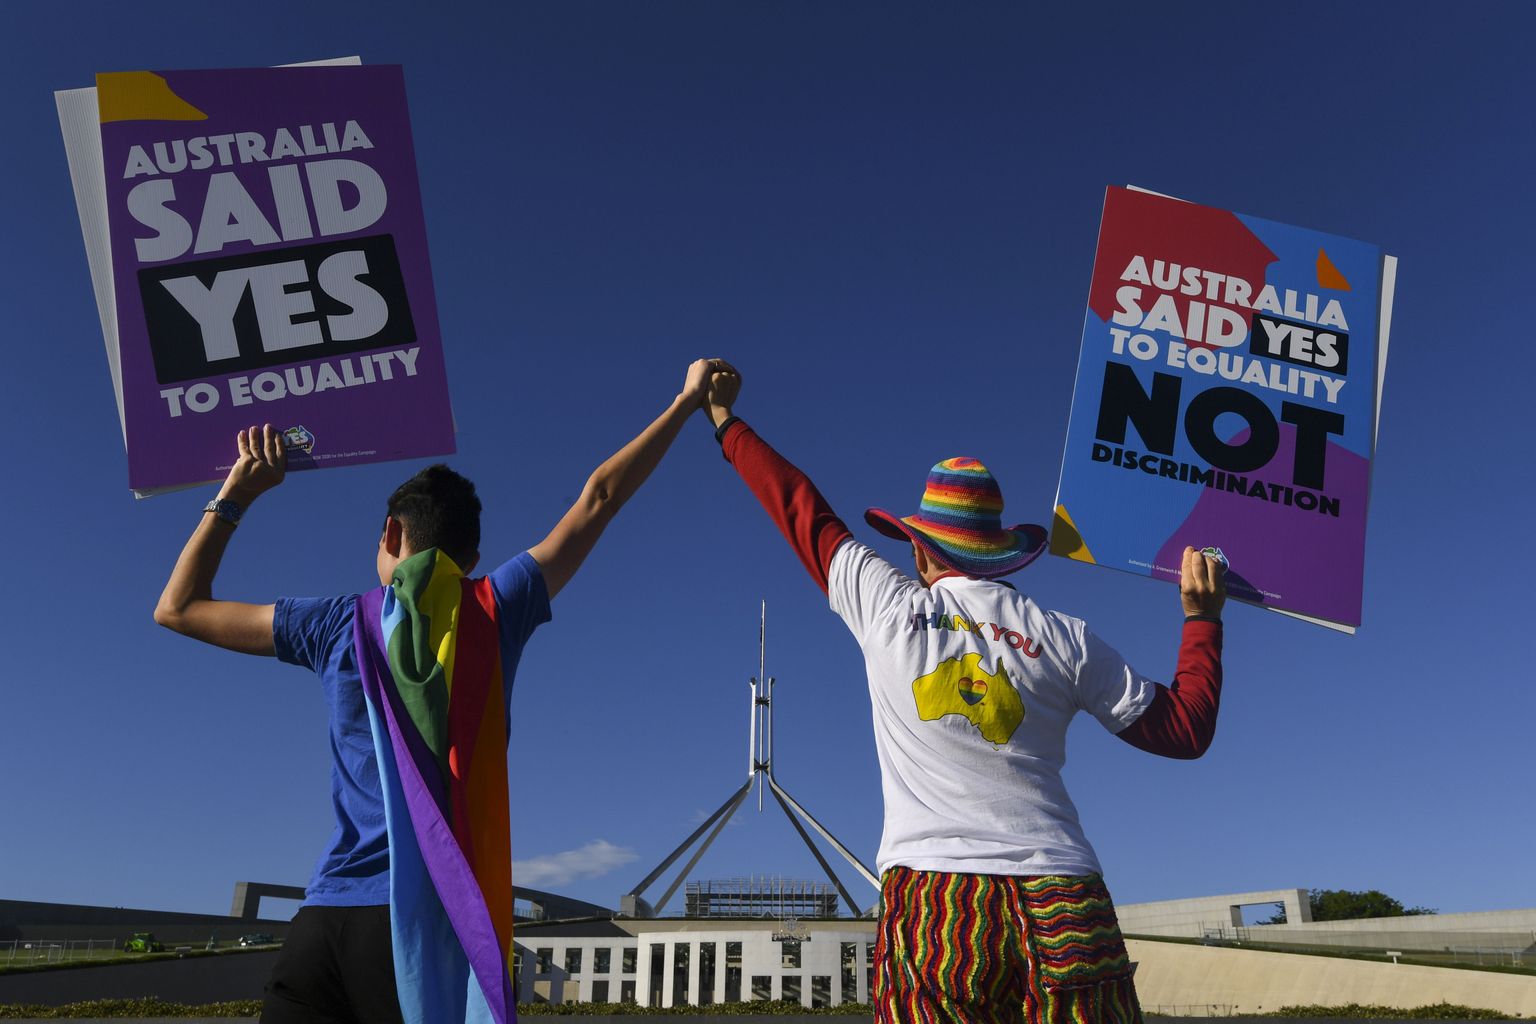 Samasooliste paaride abielu toetajad Canberras parlamendihoone ees.